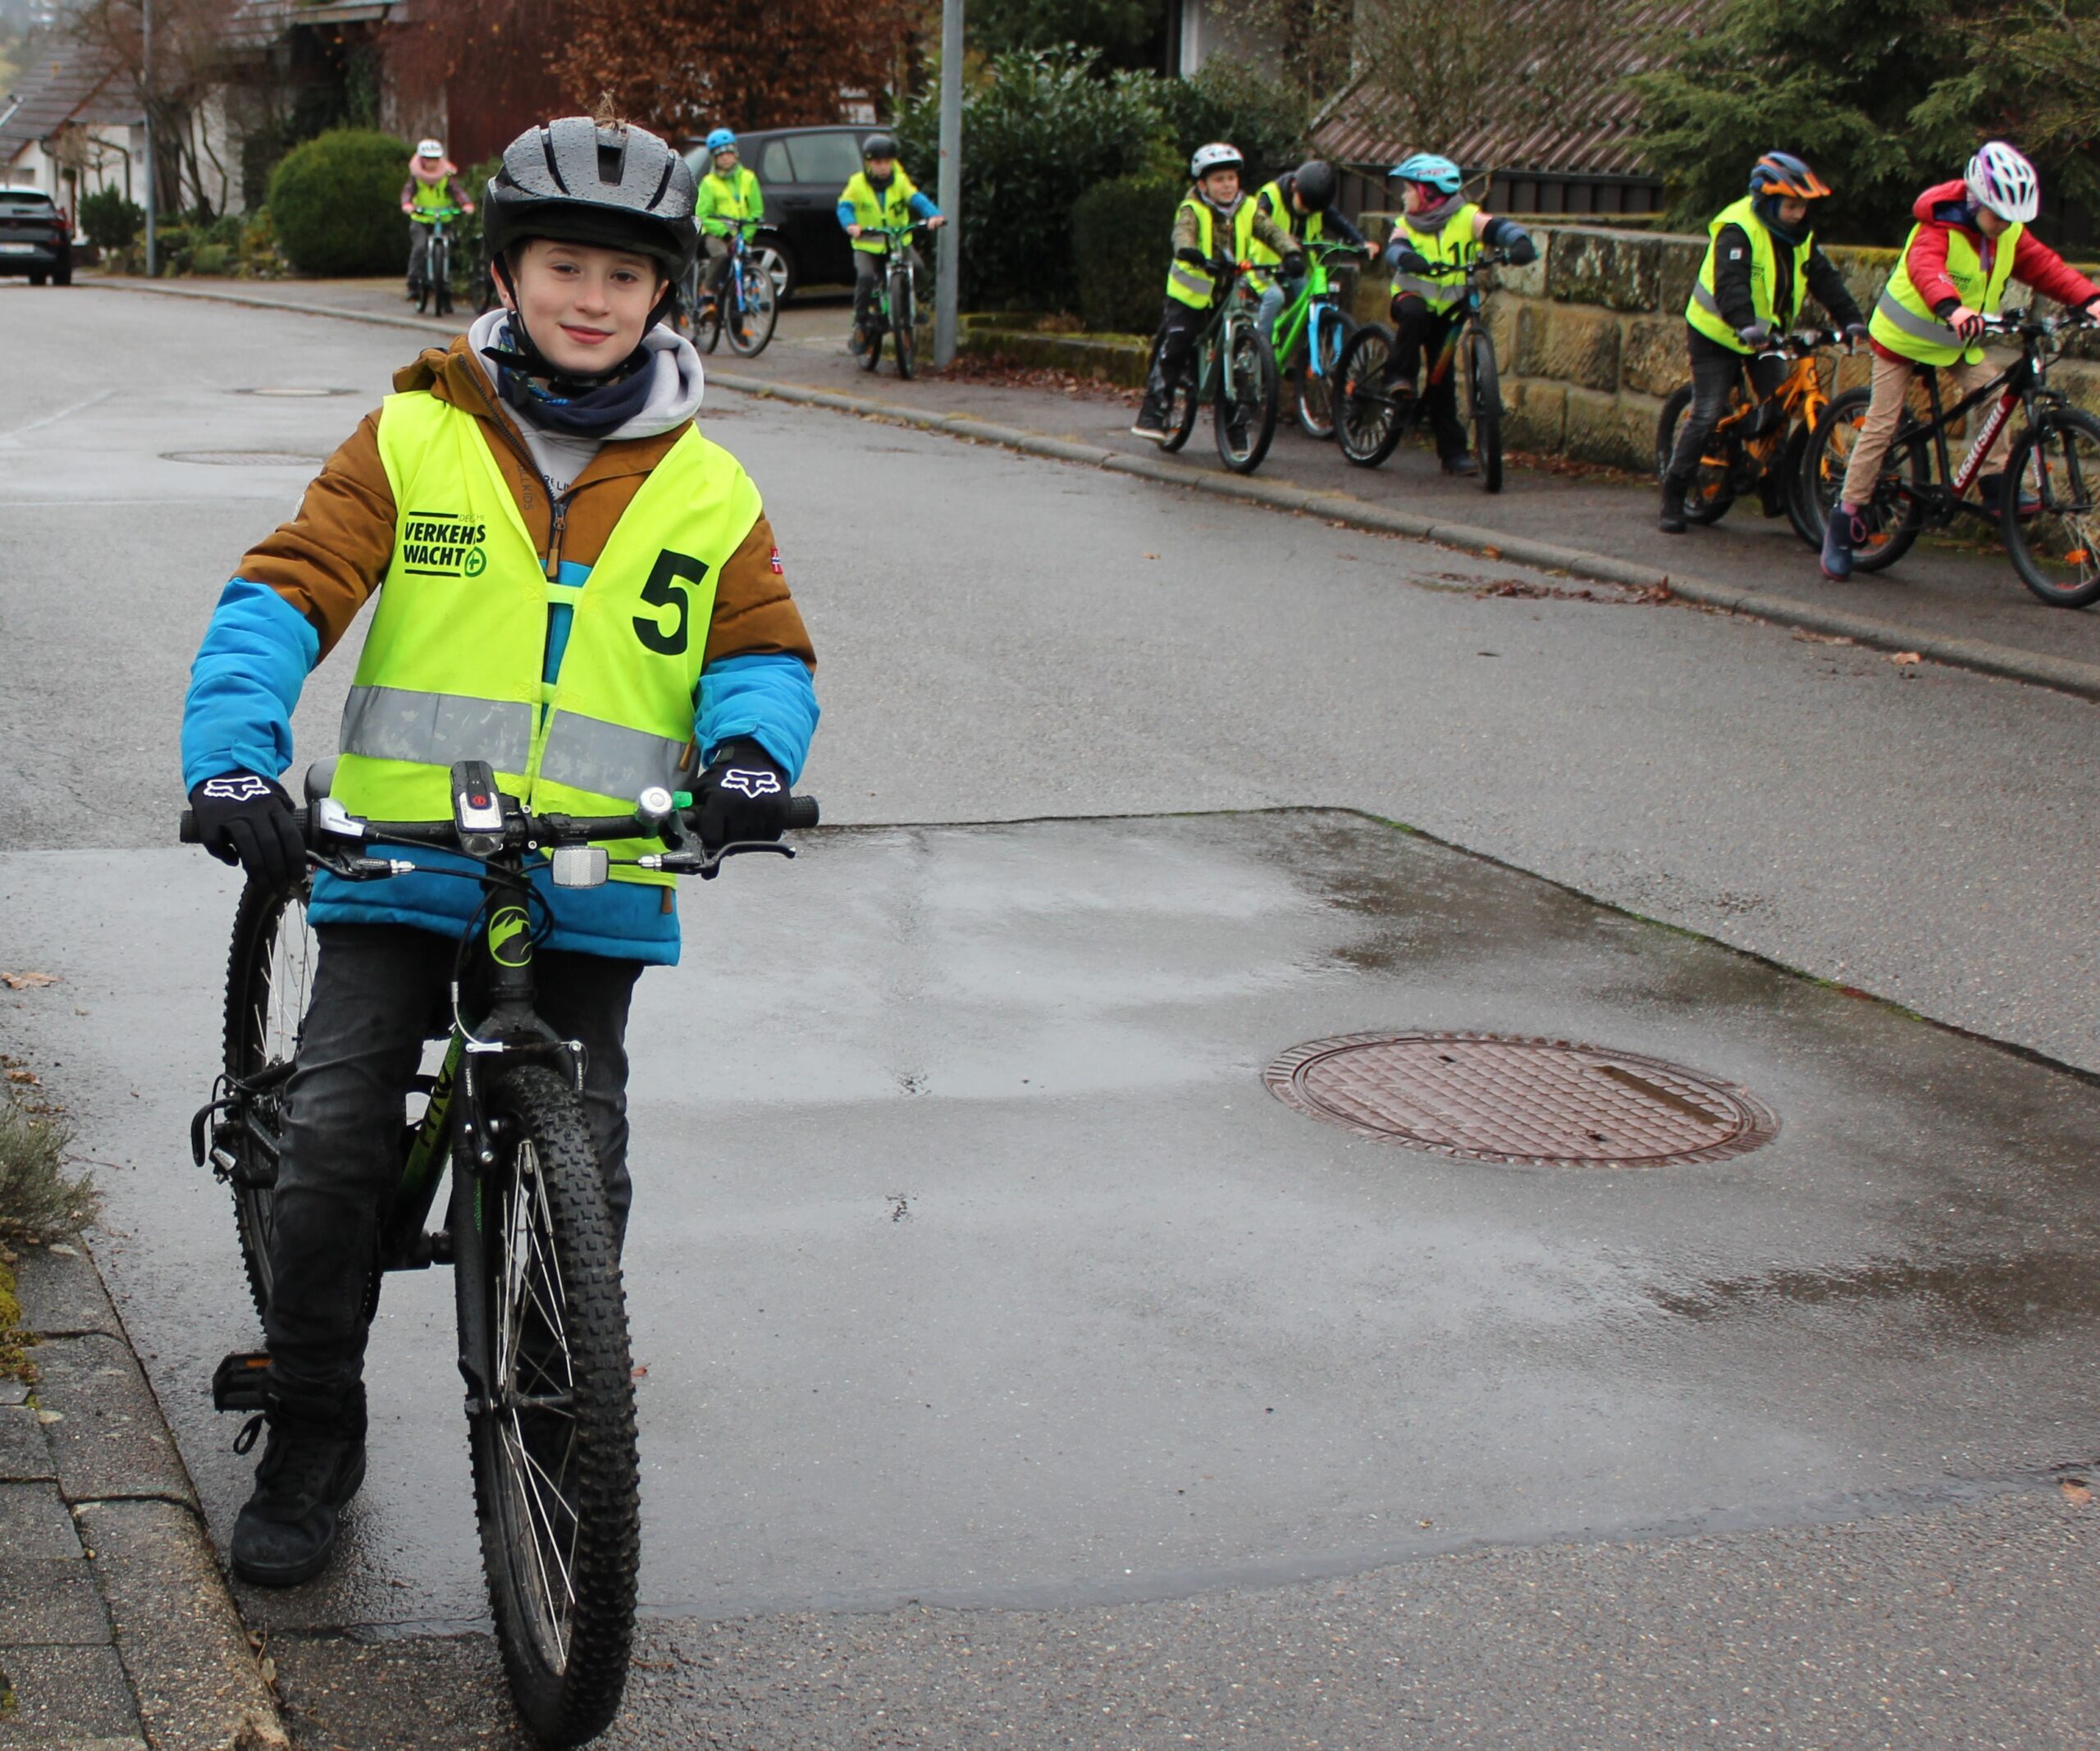 Im Vordergrund steht ein Kind bereit zum Losfahren und im Hintergrund sieht man andere Kinder auf dem Gehweg Fahrrad fahren.